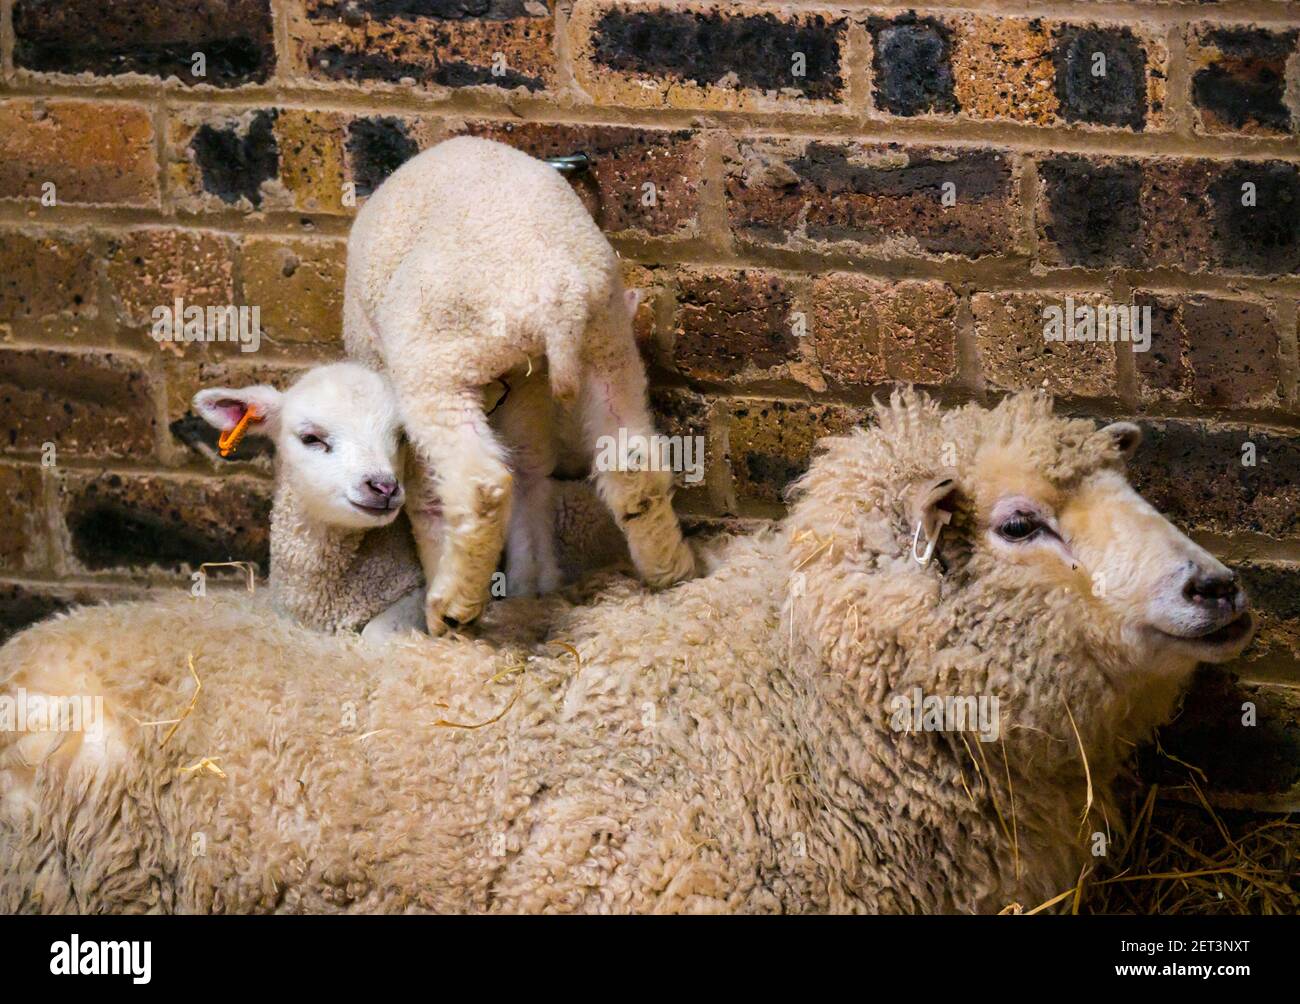 Mignon nouveau-né mouton Shetland jumeaux d'agneau couché sur la brebis mère dans la grange, Ecosse, Royaume-Uni Banque D'Images